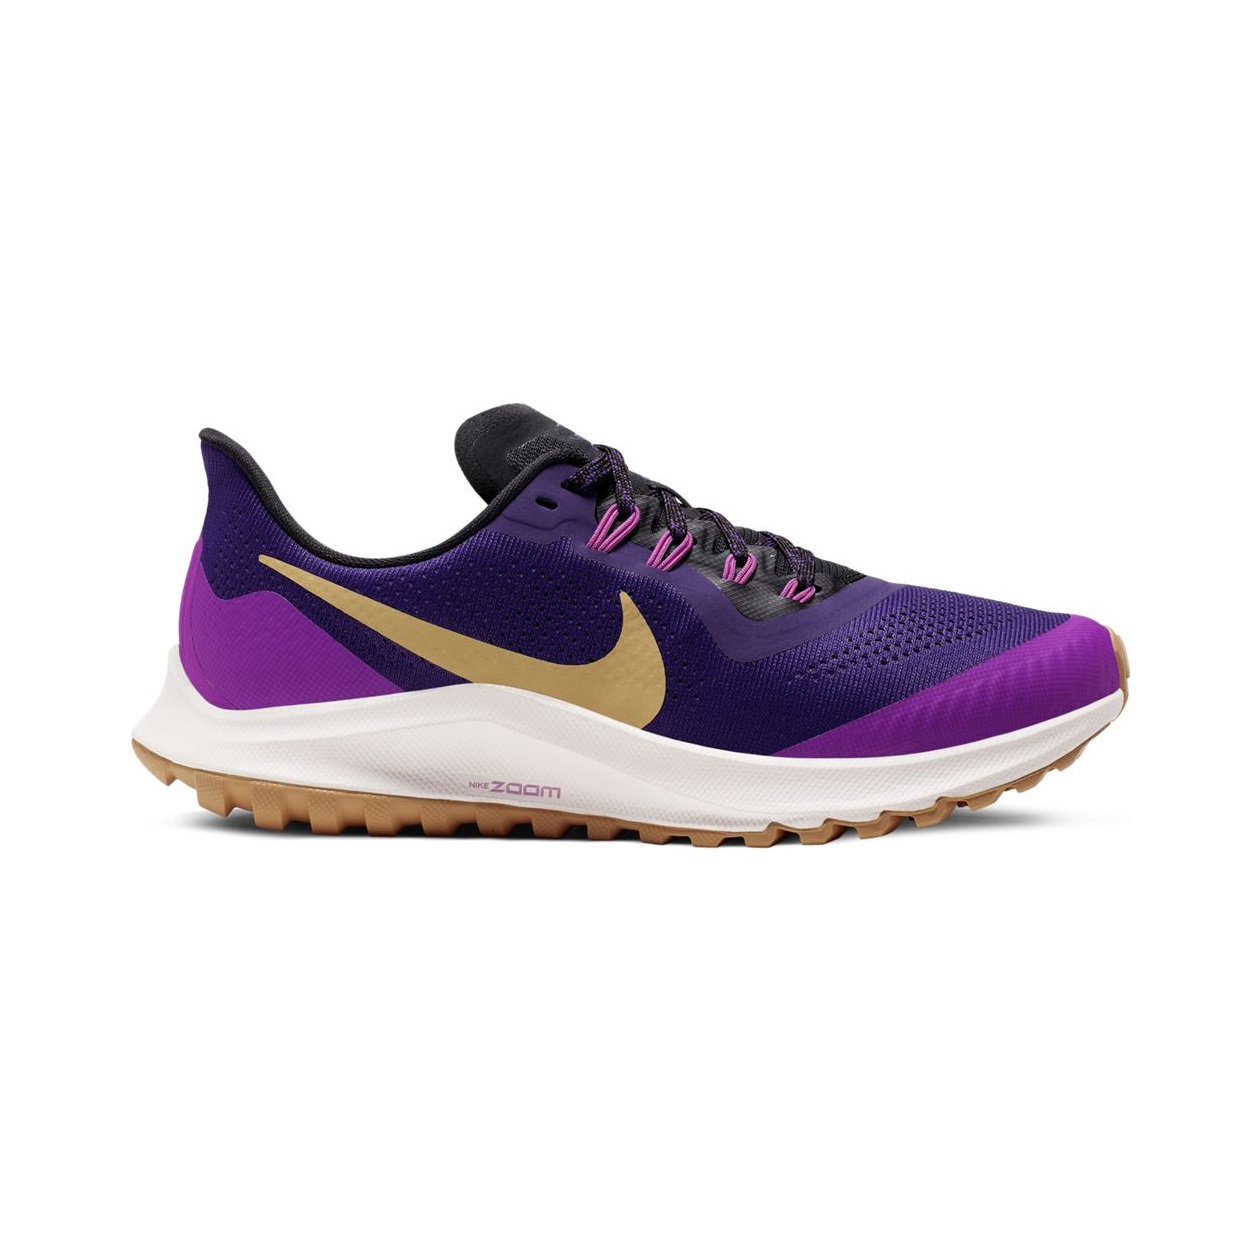 Zapatillas de trail running para mujer - Nike Zoom Pegasus Trail - AR5676-500 | ferrersport.com | Tienda online de deportes